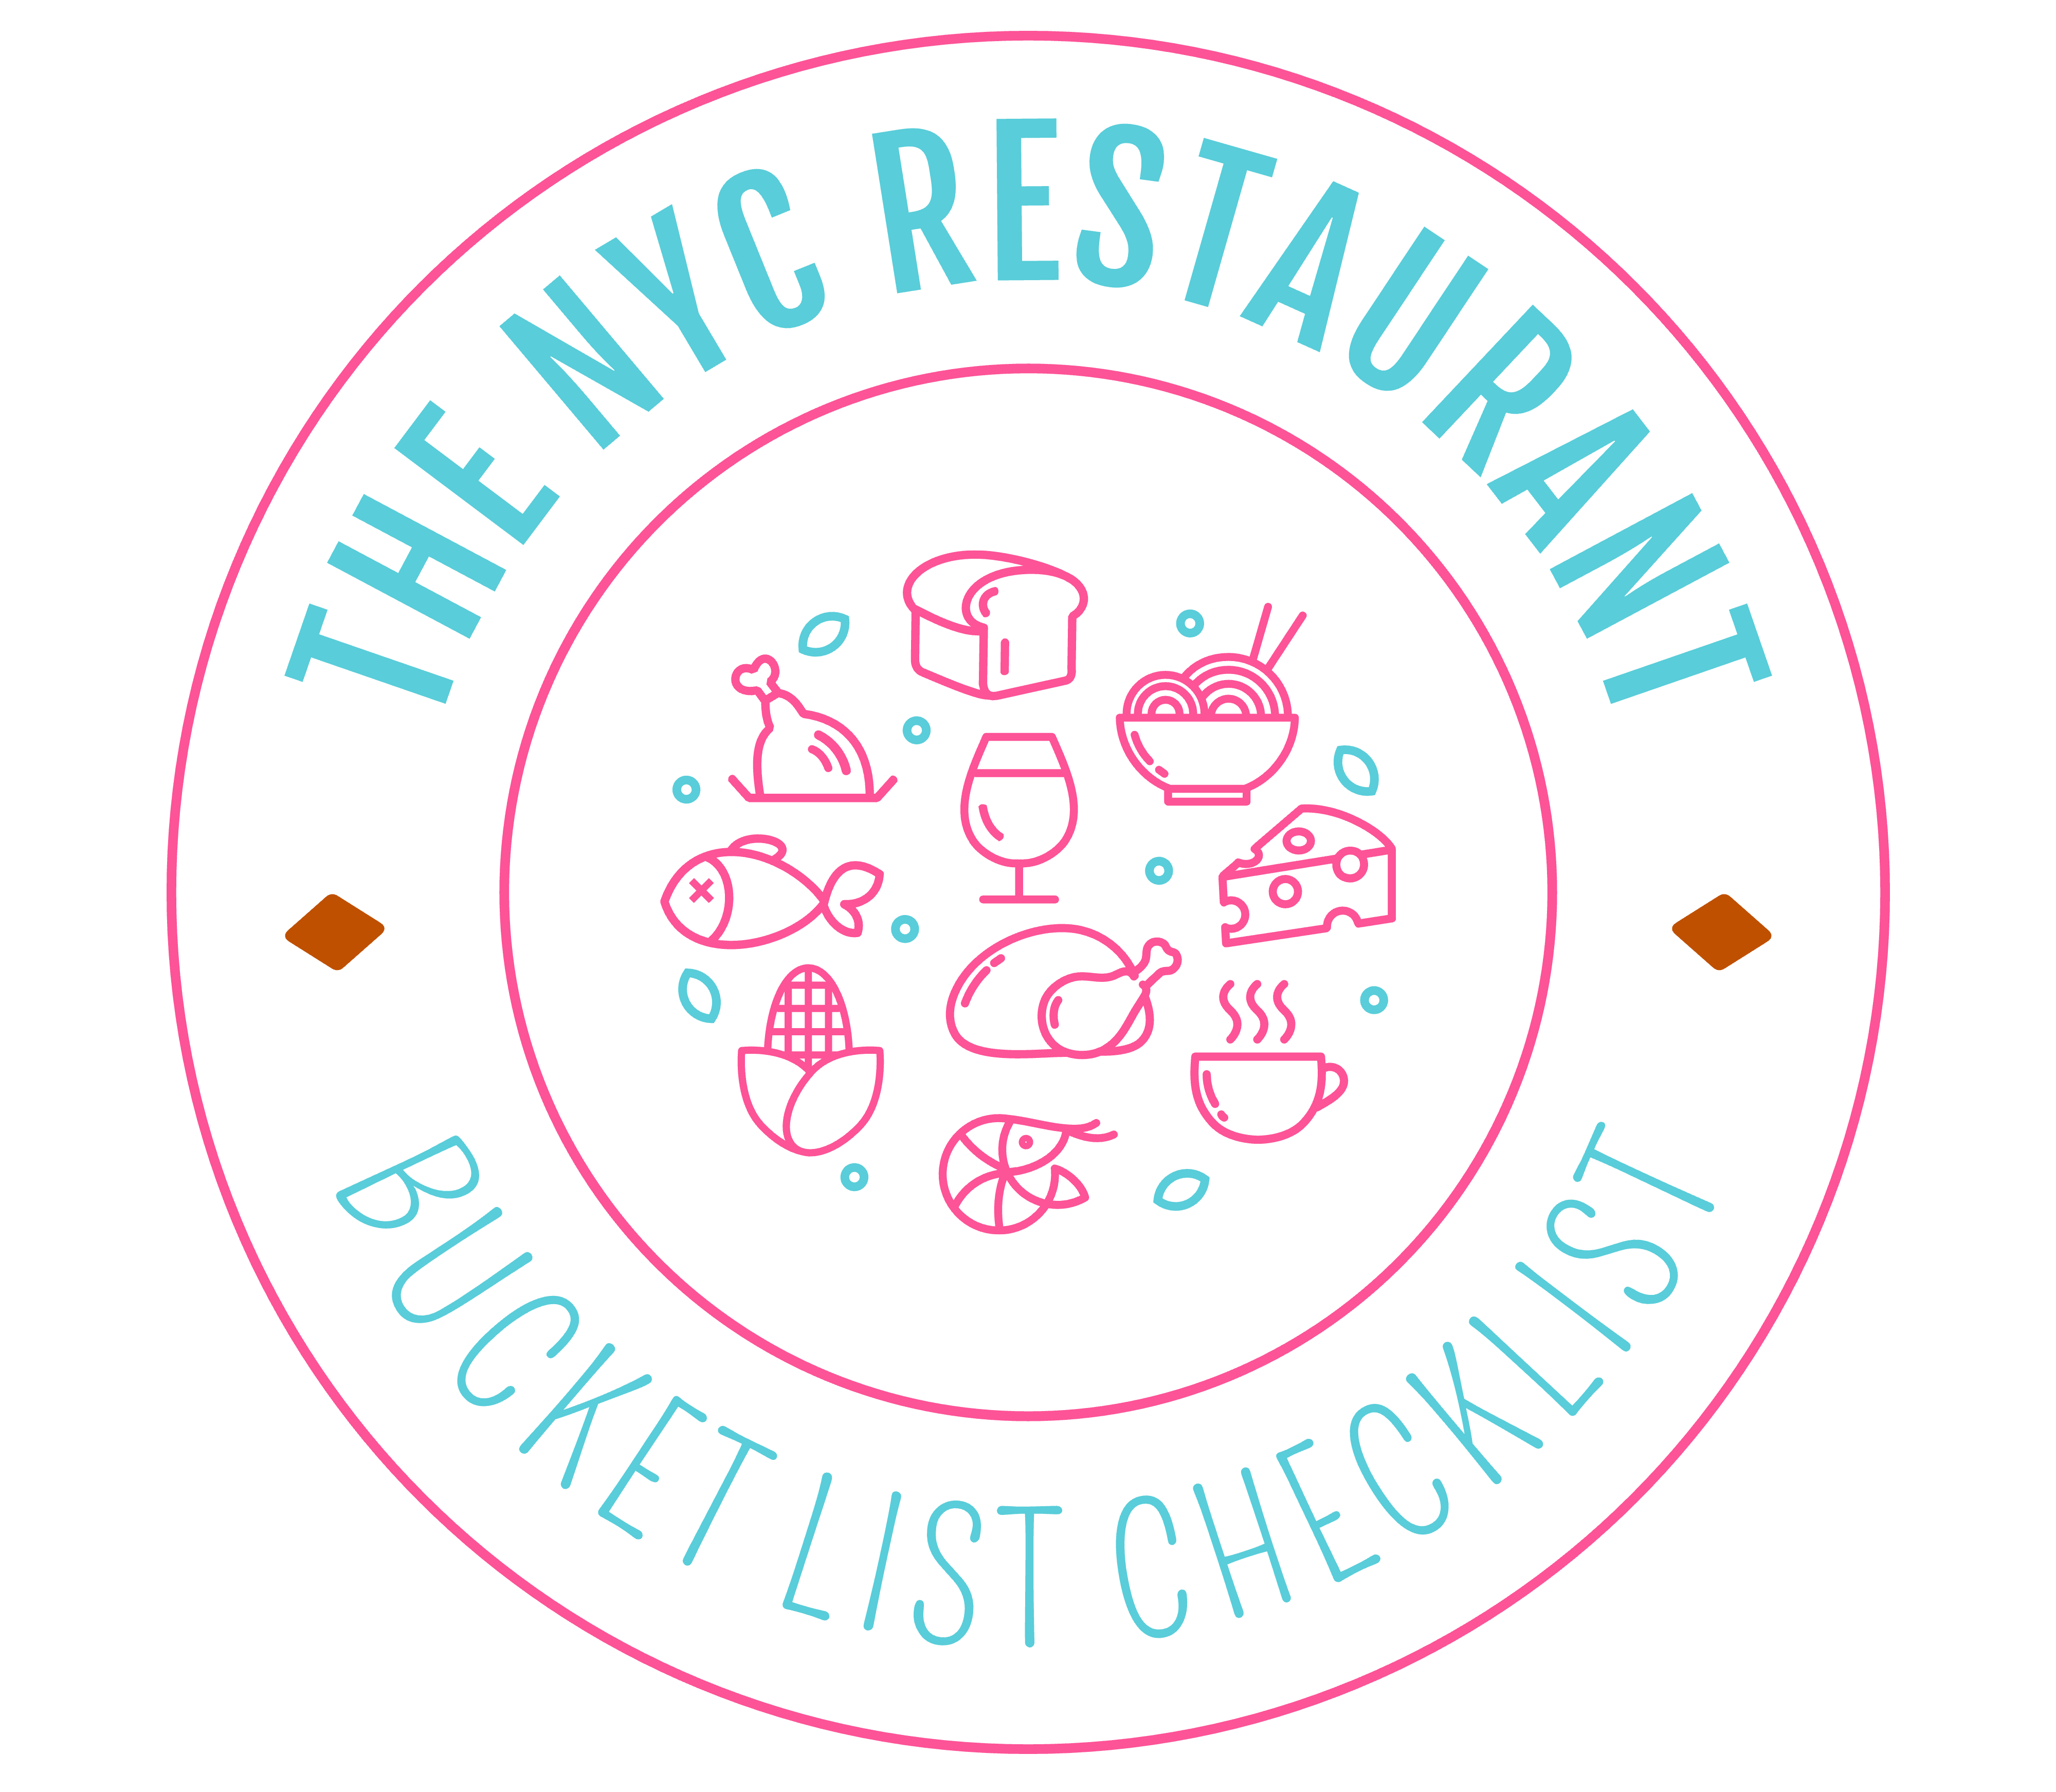 The NYC Restaurant Bucket List Checklist